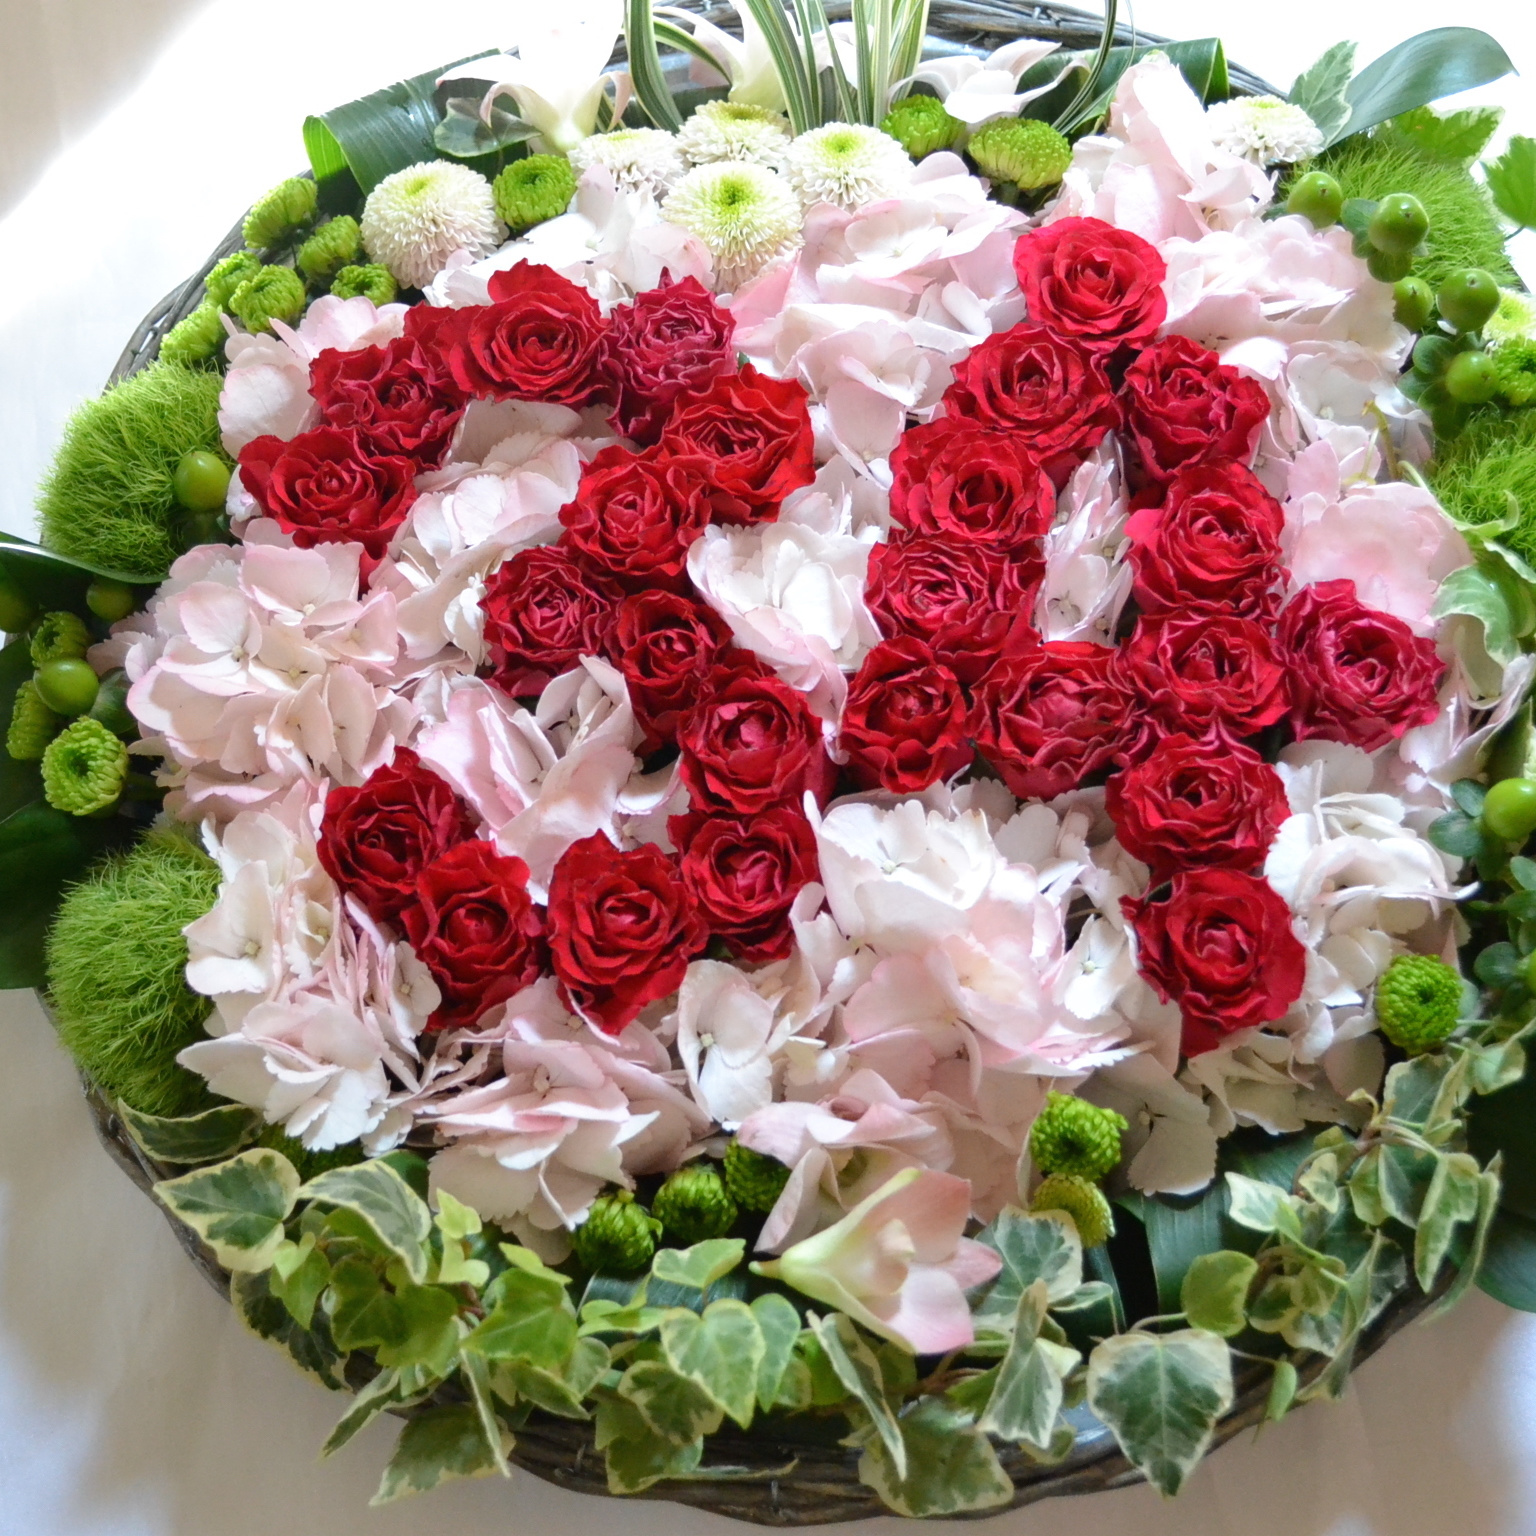 花文字アレンジ「34」赤バラと白アジサイ